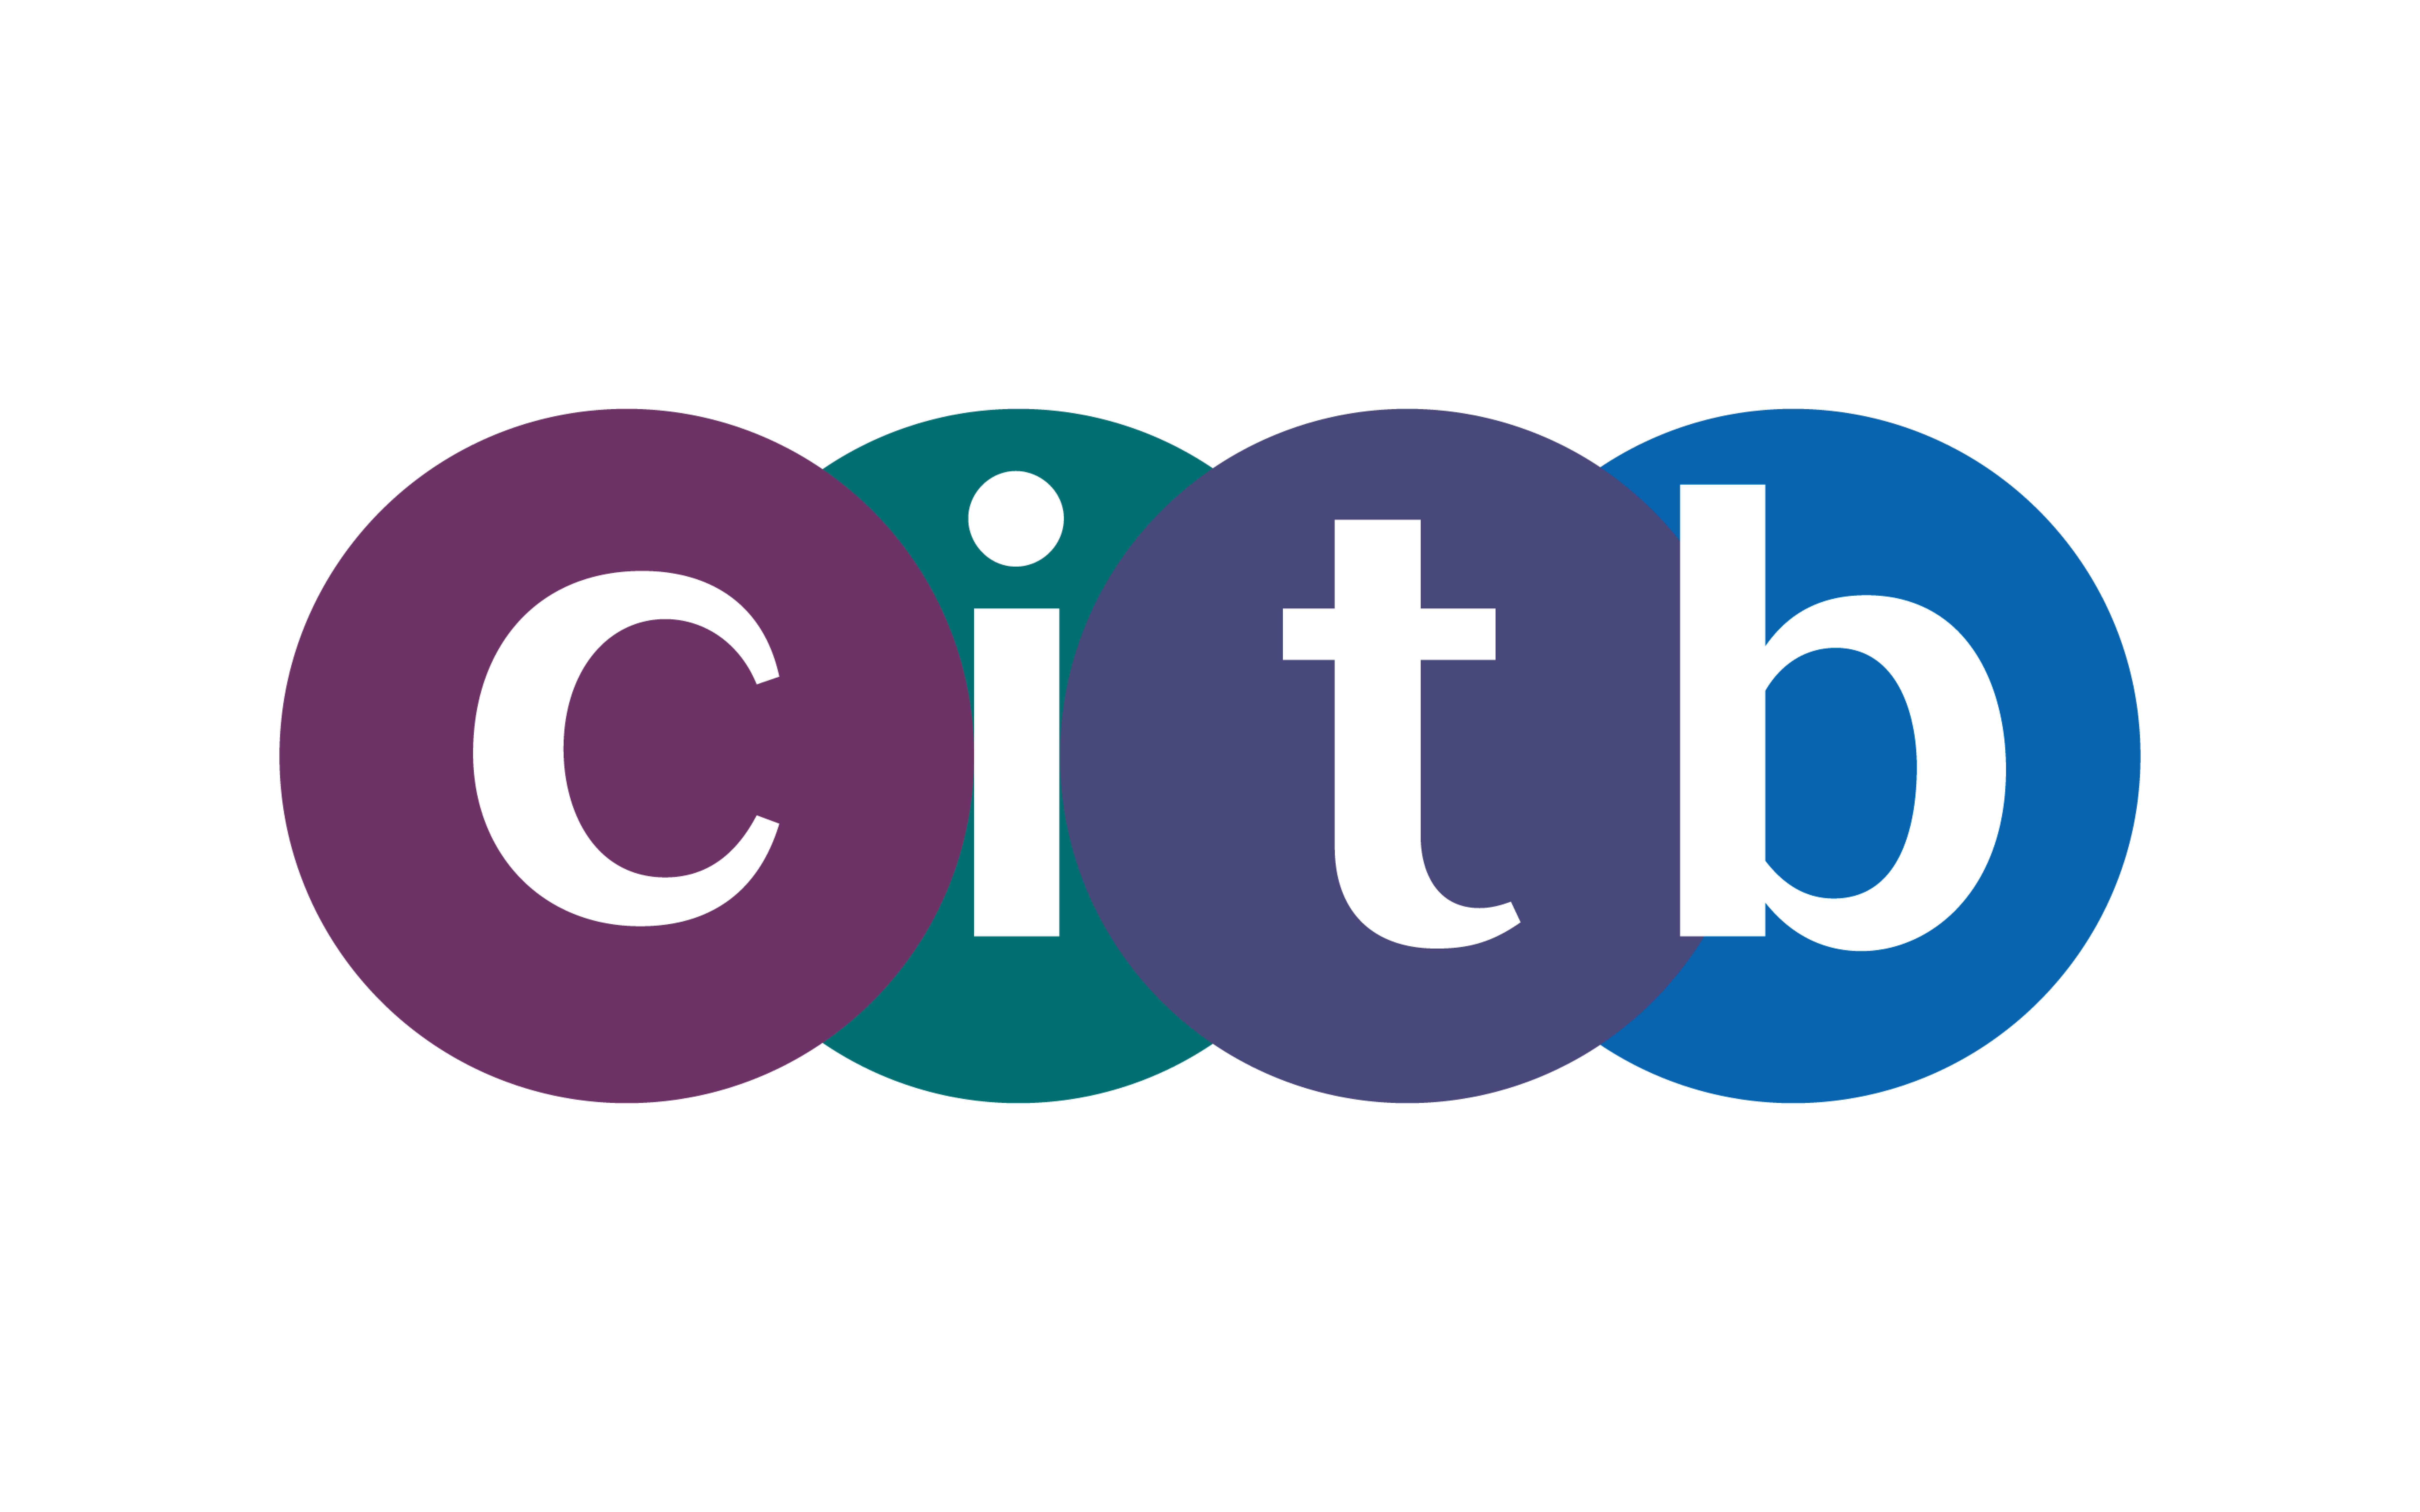 the_citb_logo